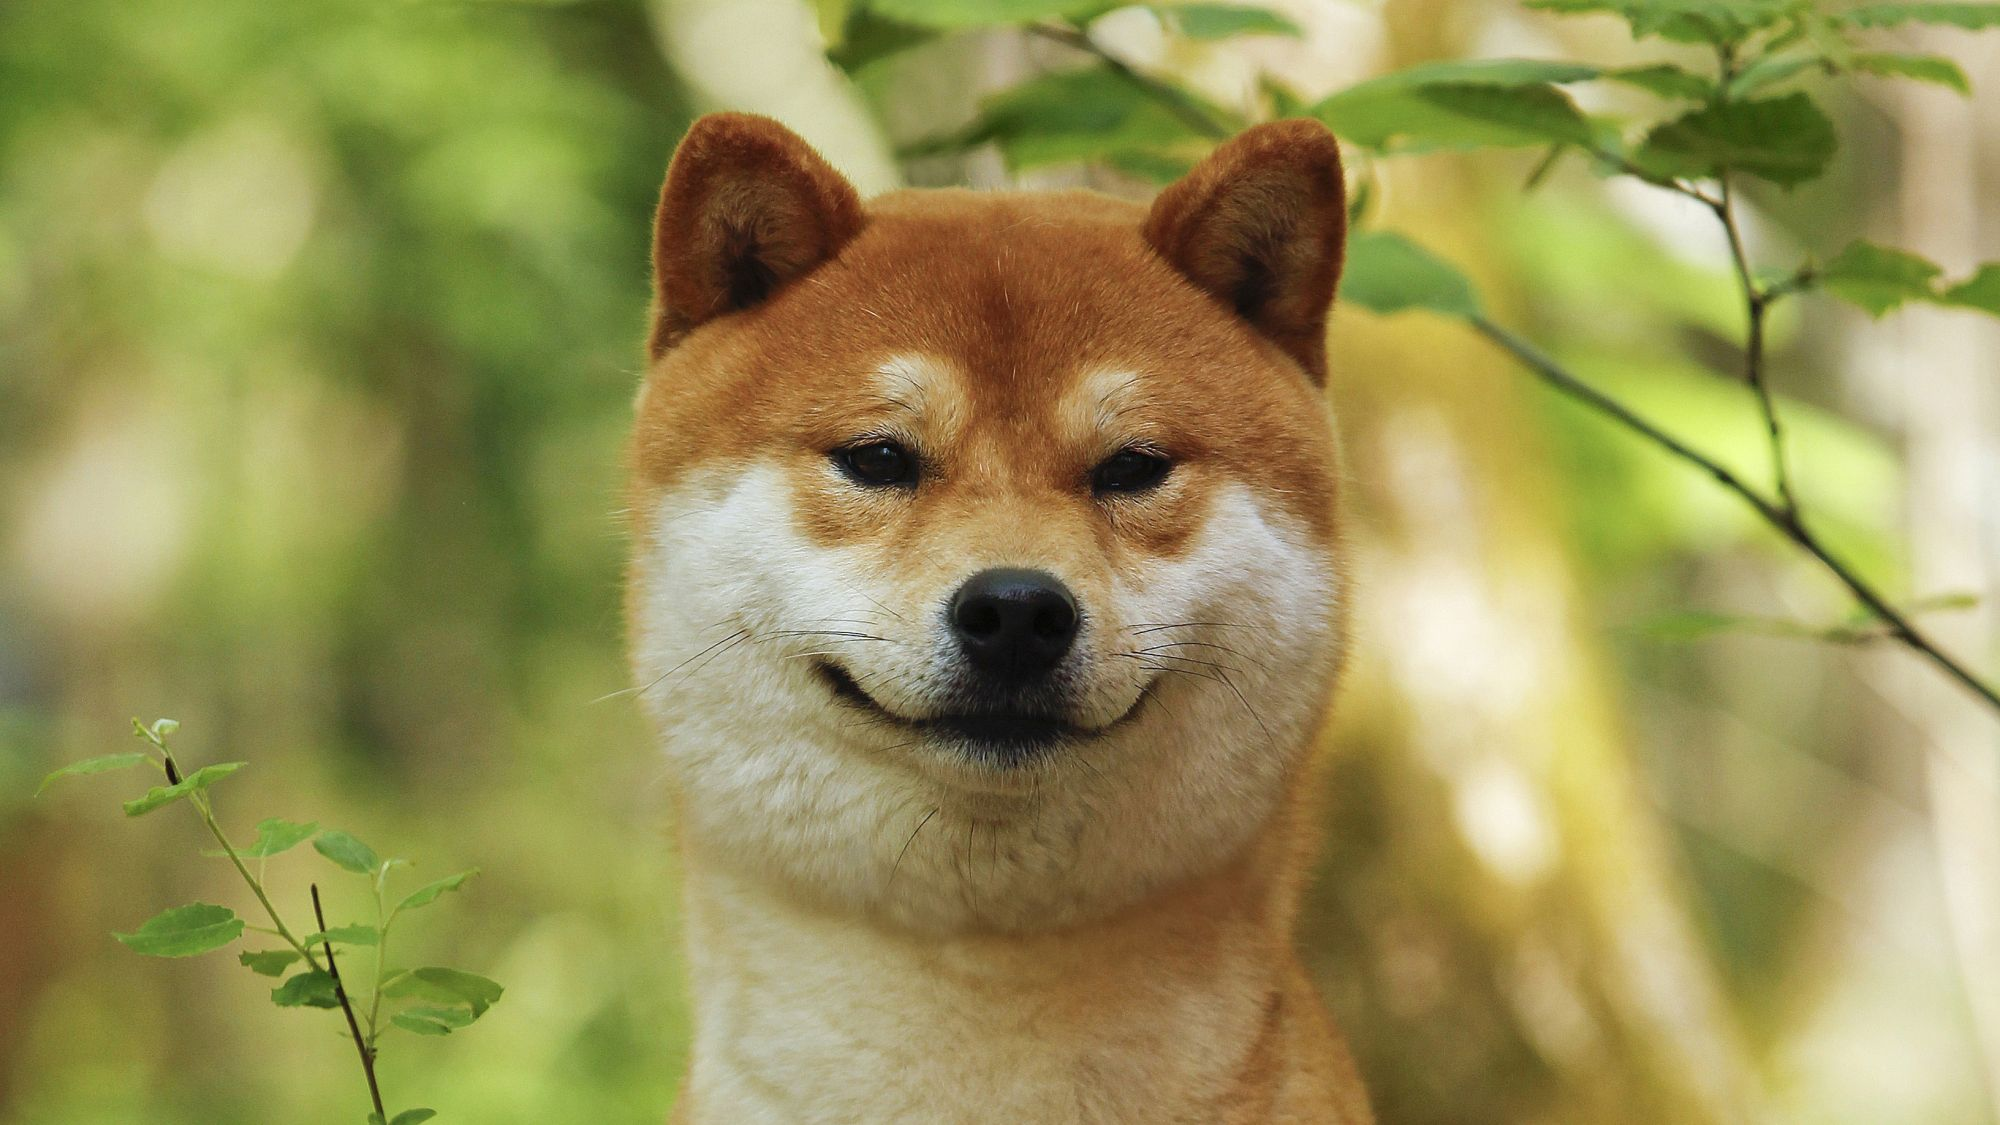 nærbillede af en shiba inu-hund, der kigger ind i kameraet